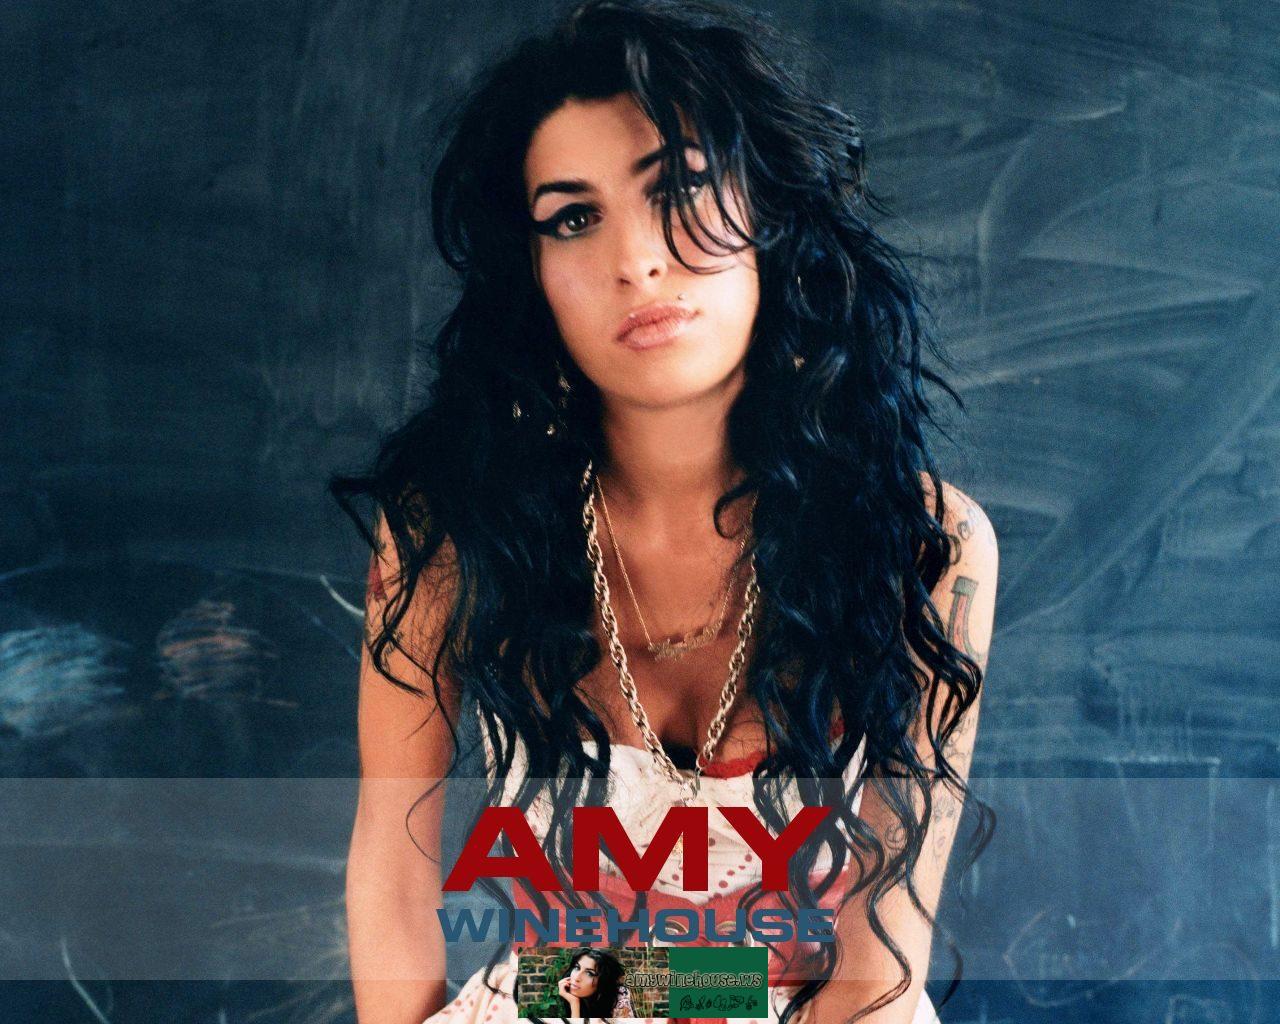 Amy Winehouse – Back to Black Lyrics